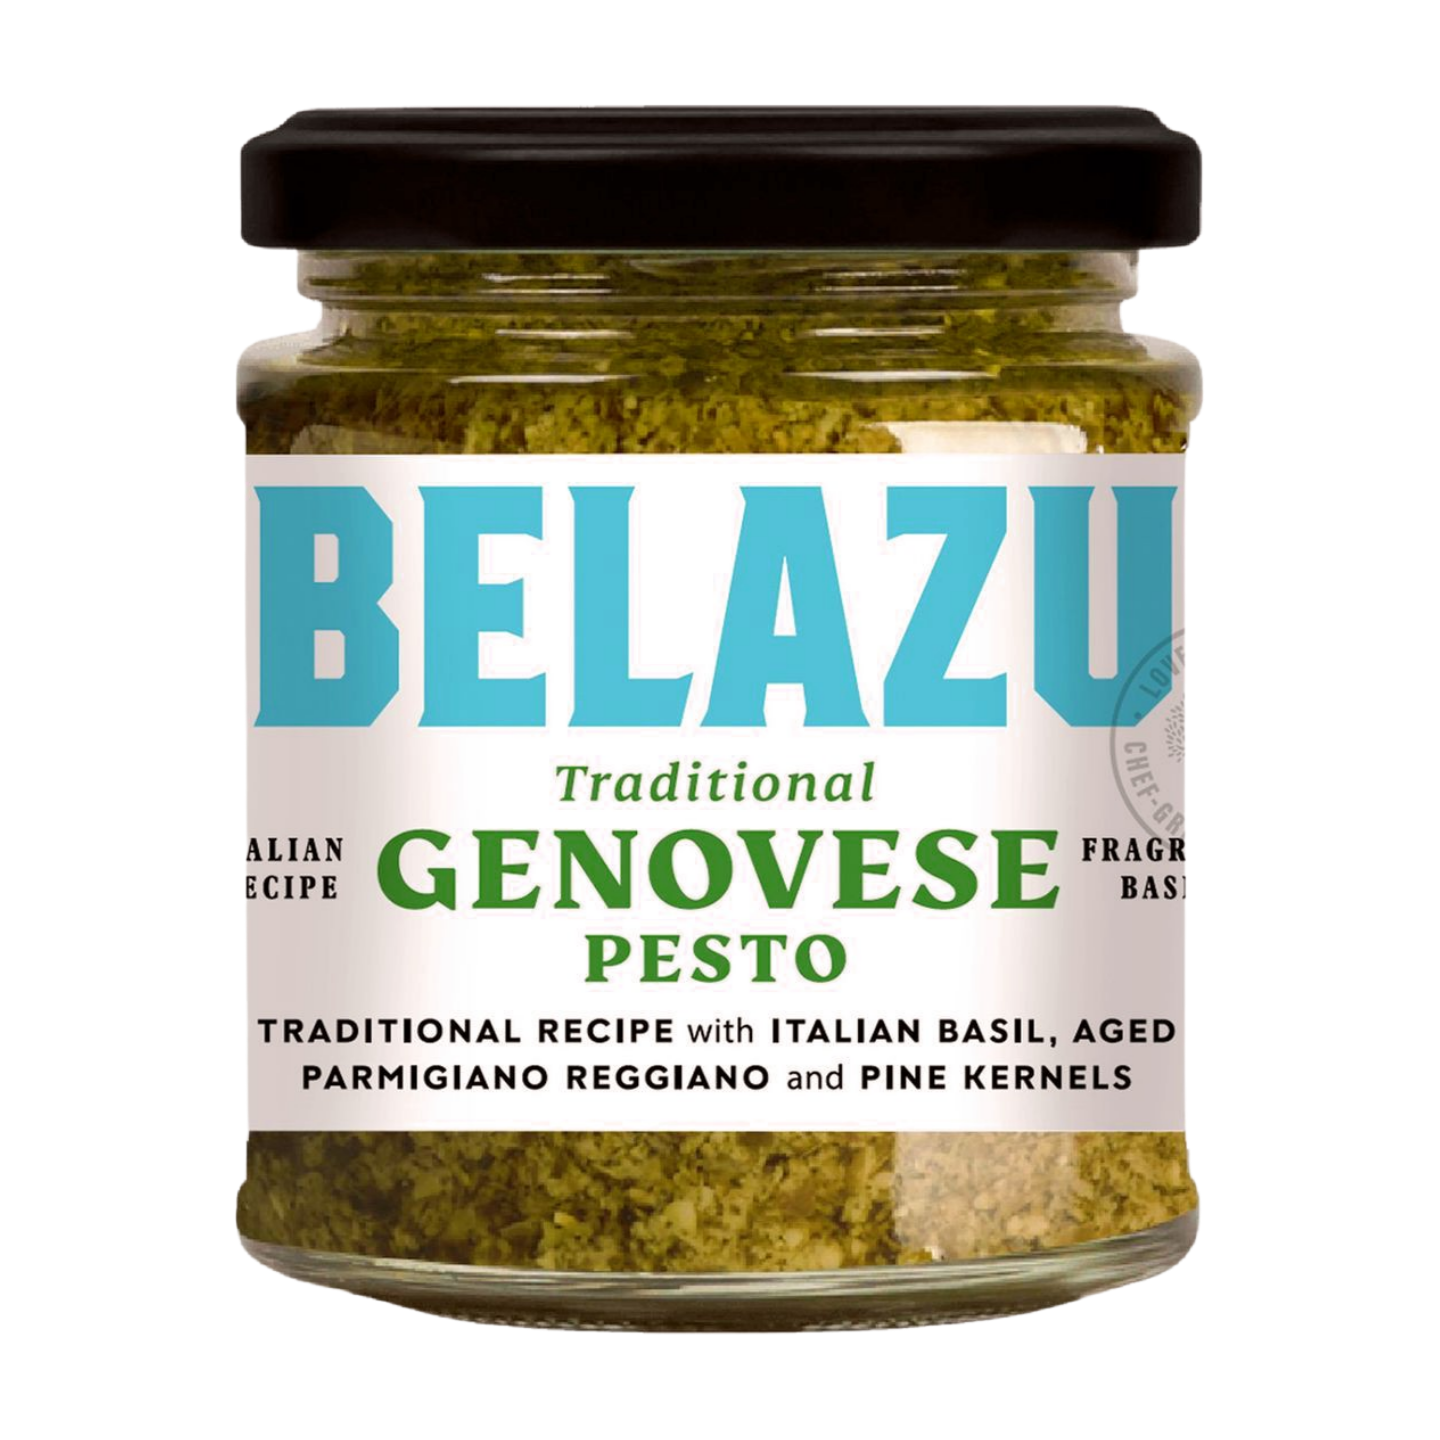 Belazu Traditional Genovese Pesto (6x165g)